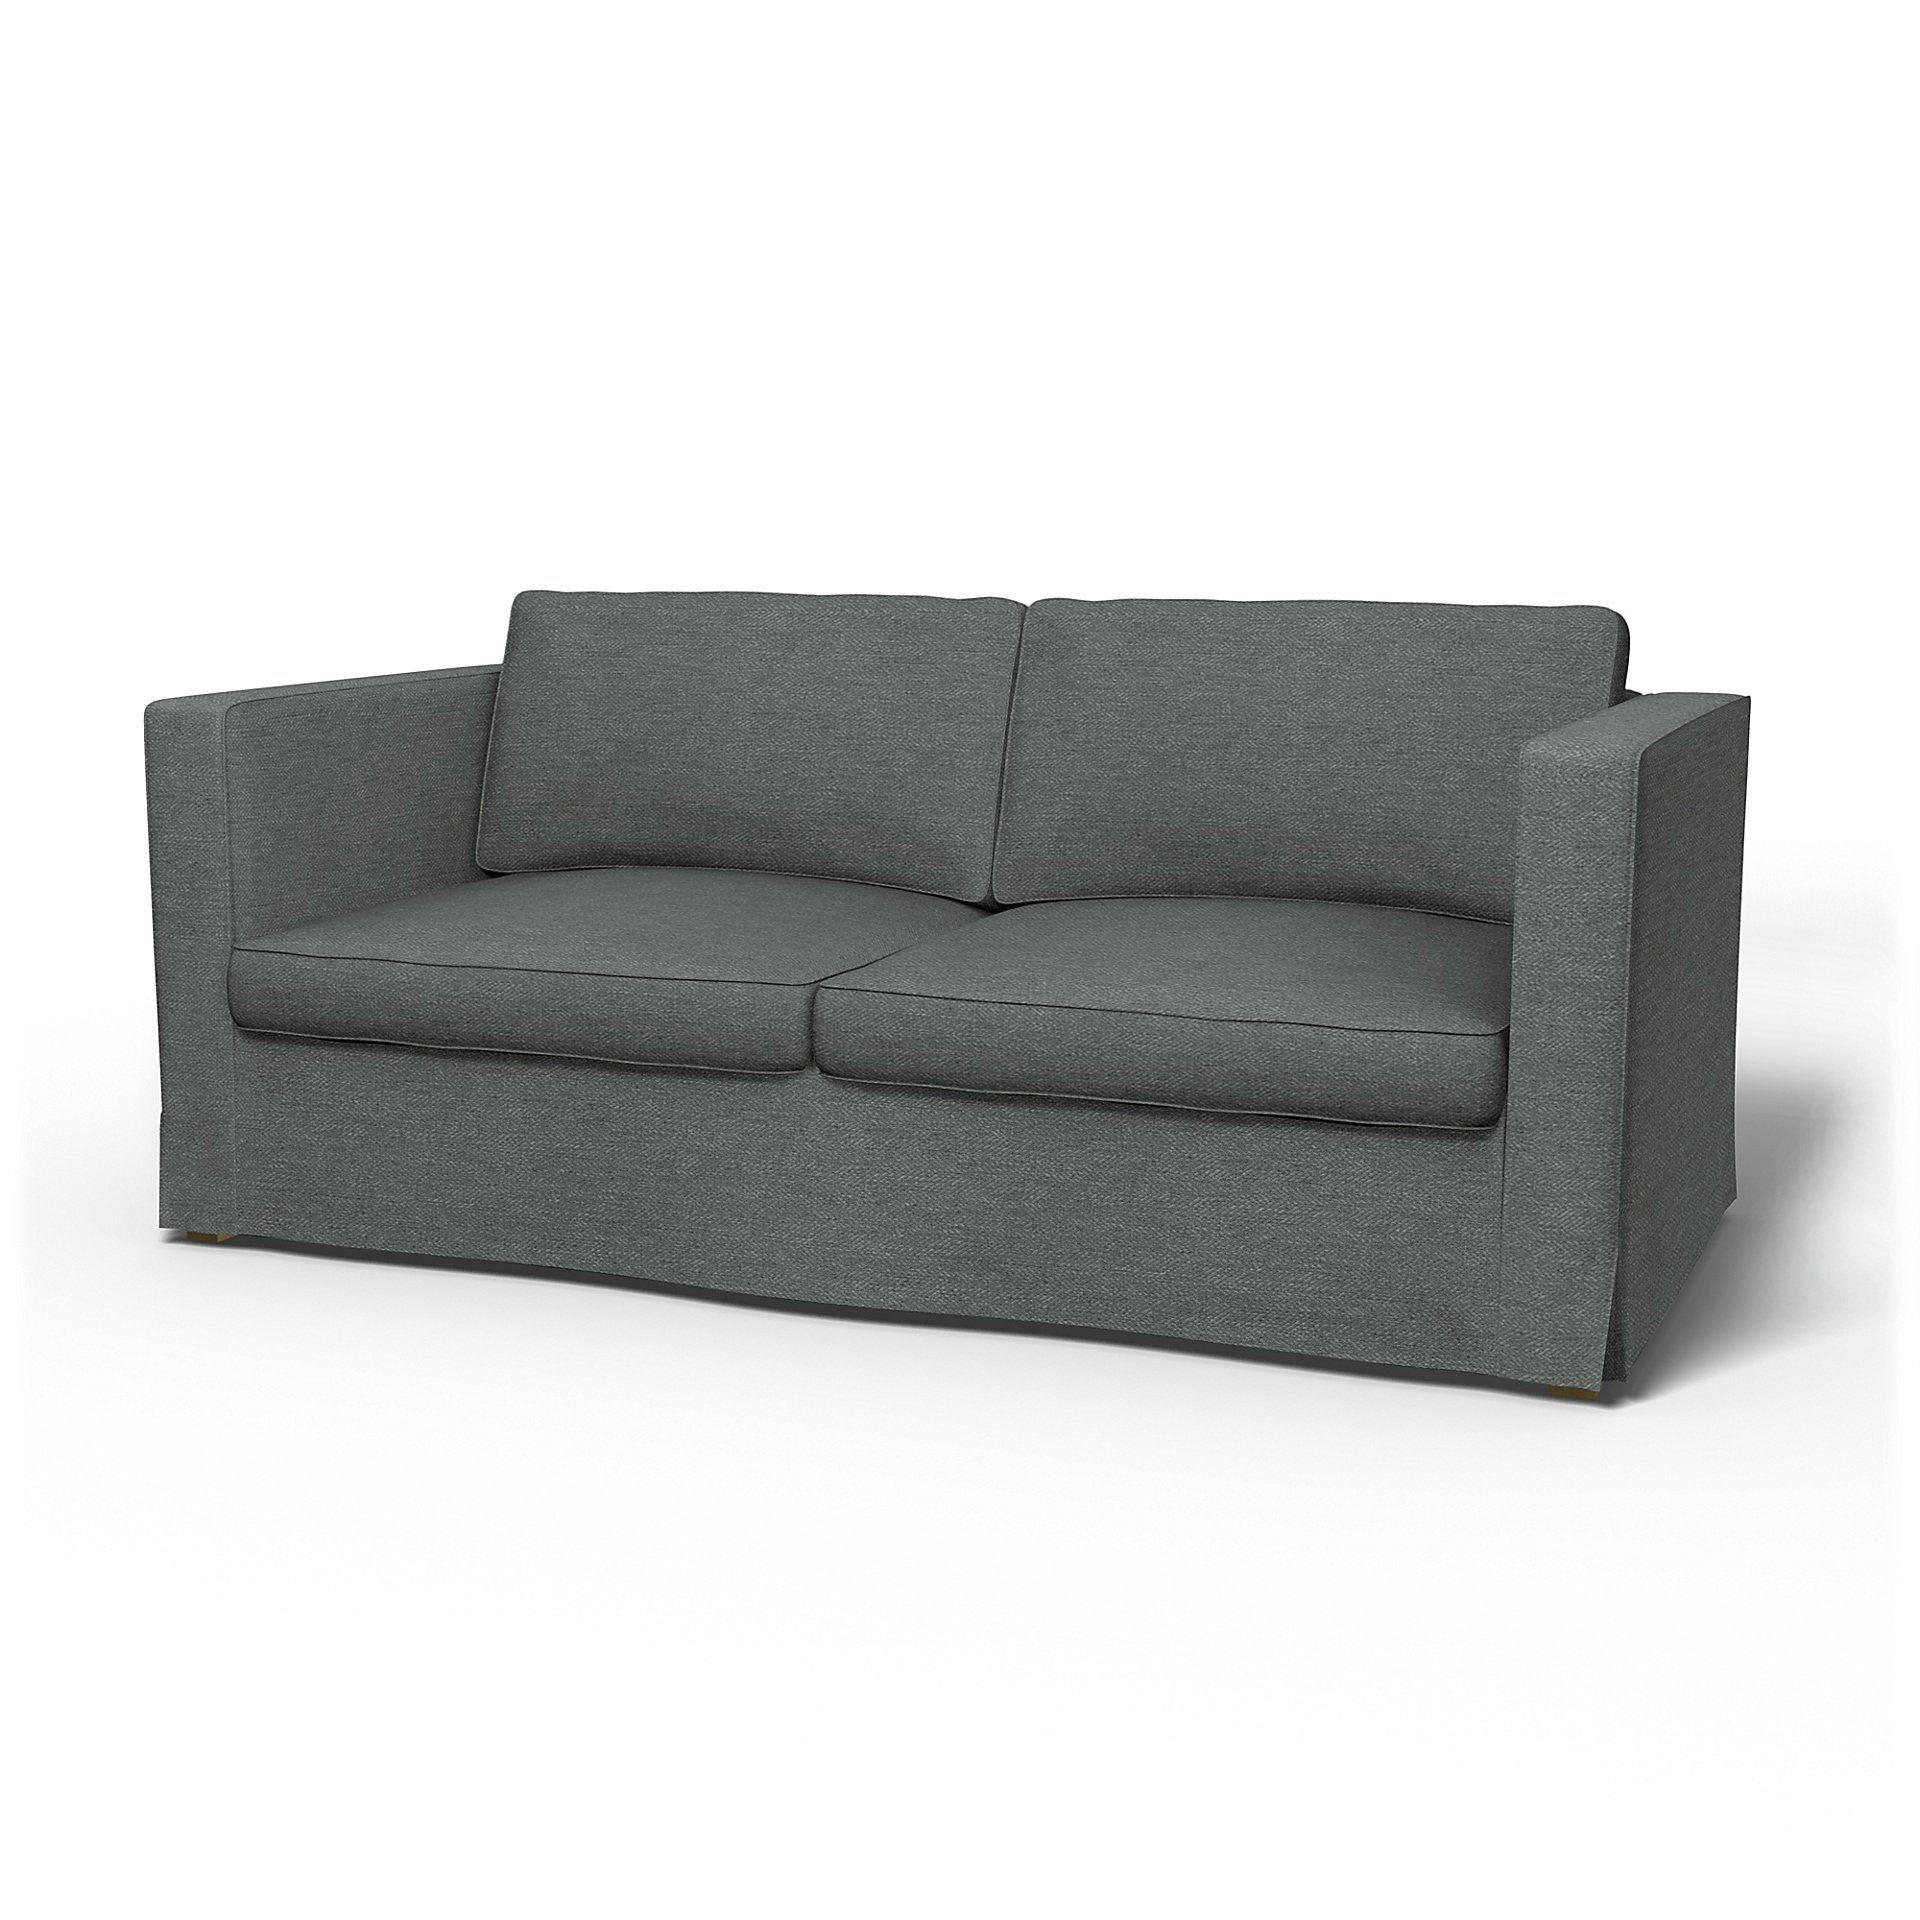 IKEA - Karlanda Sofa Bed Cover, Laurel, Boucle & Texture - Bemz